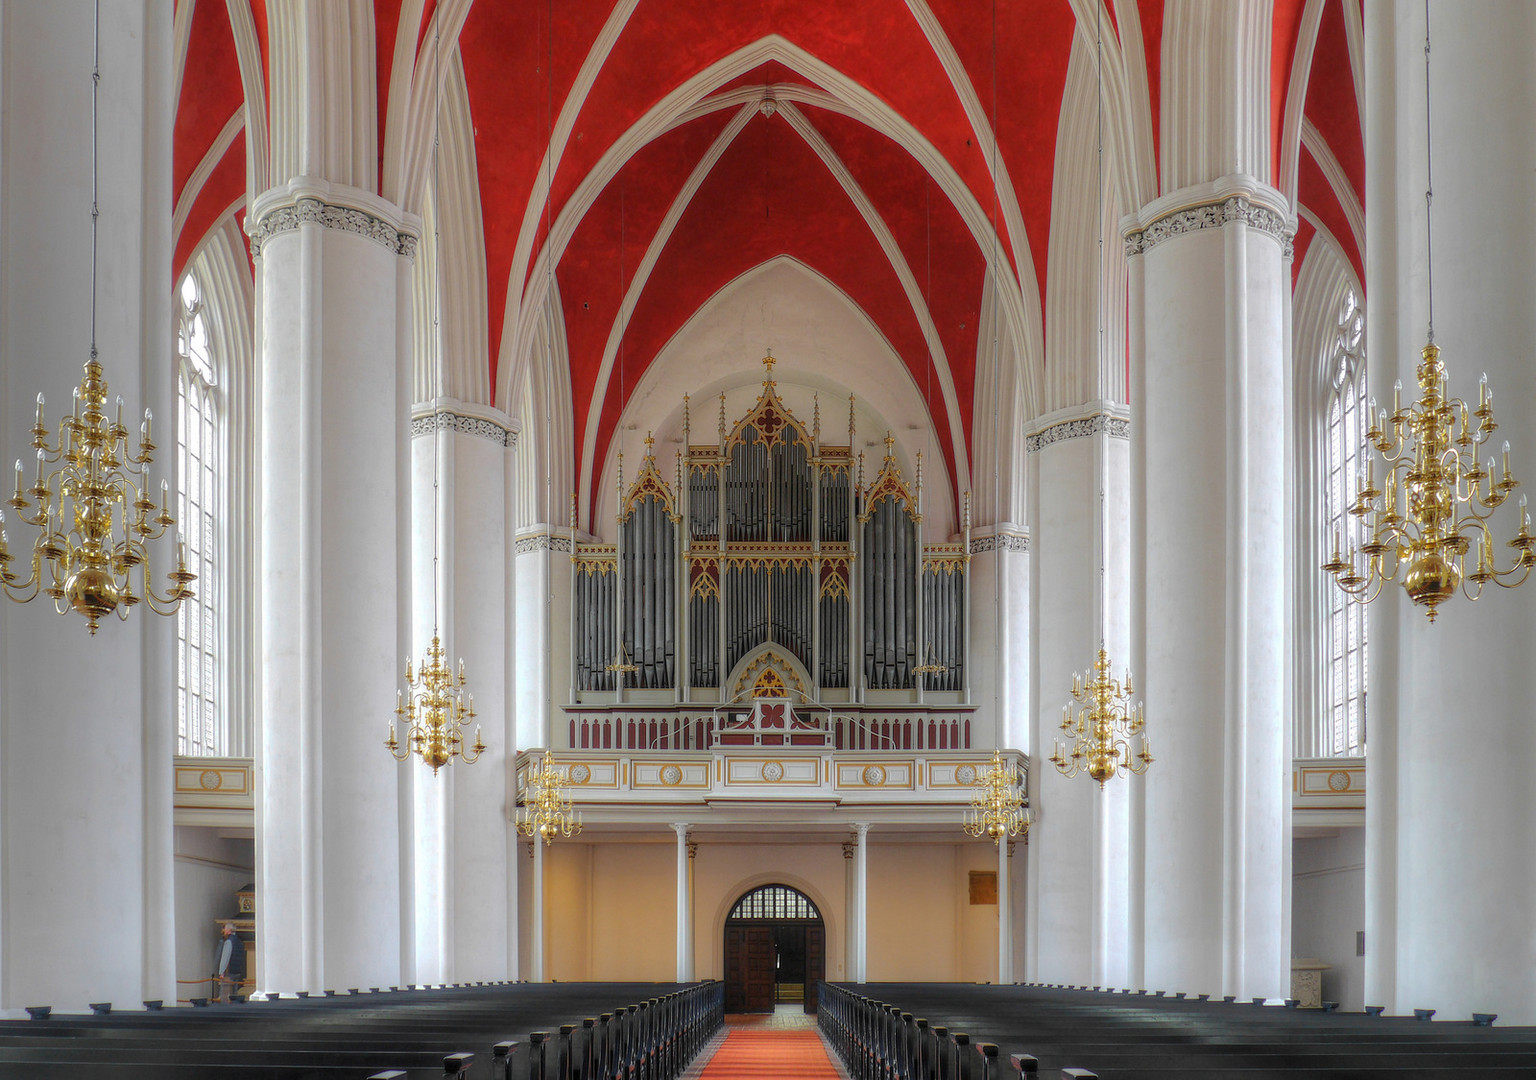 Dom zu Verden - Blick auf die "romantische Orgel"